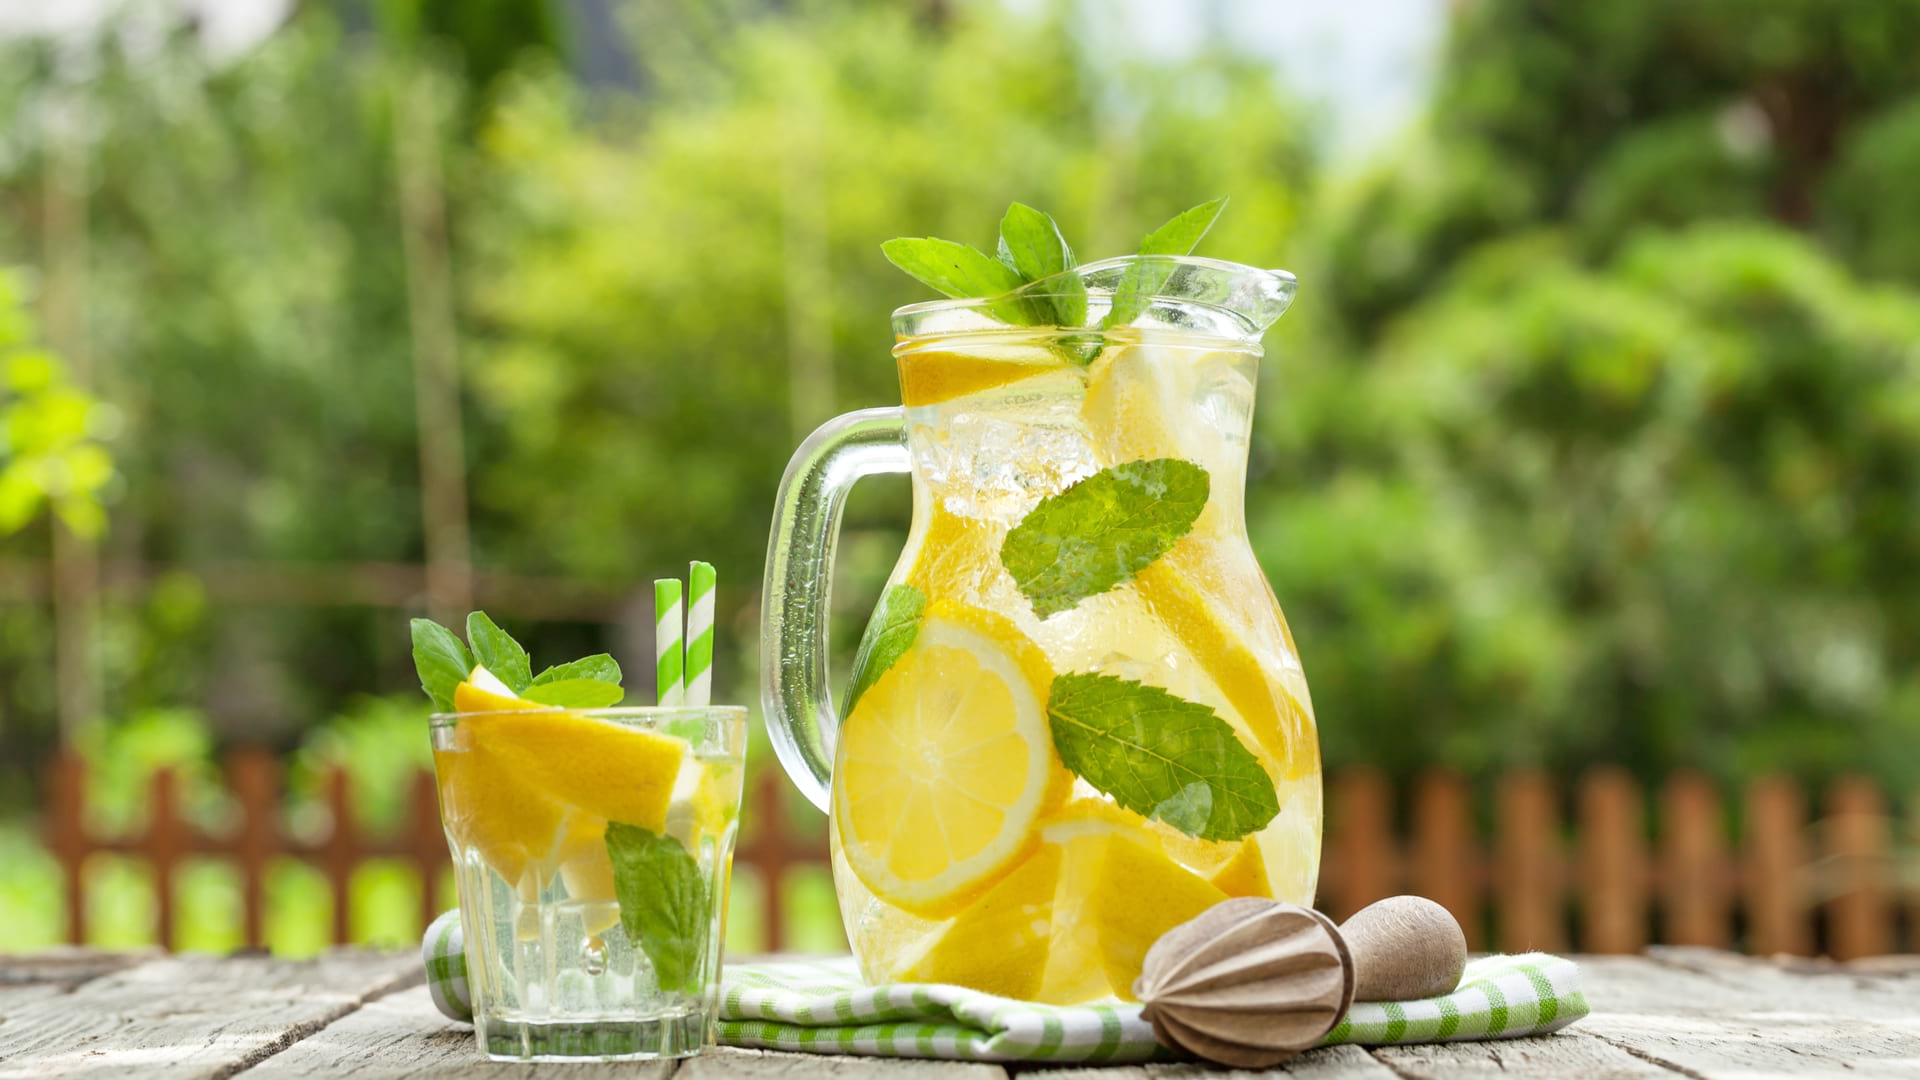 Top 5 bauturi care te ajuta sa slabesti. Ceai verde, suc de fructe, cafea